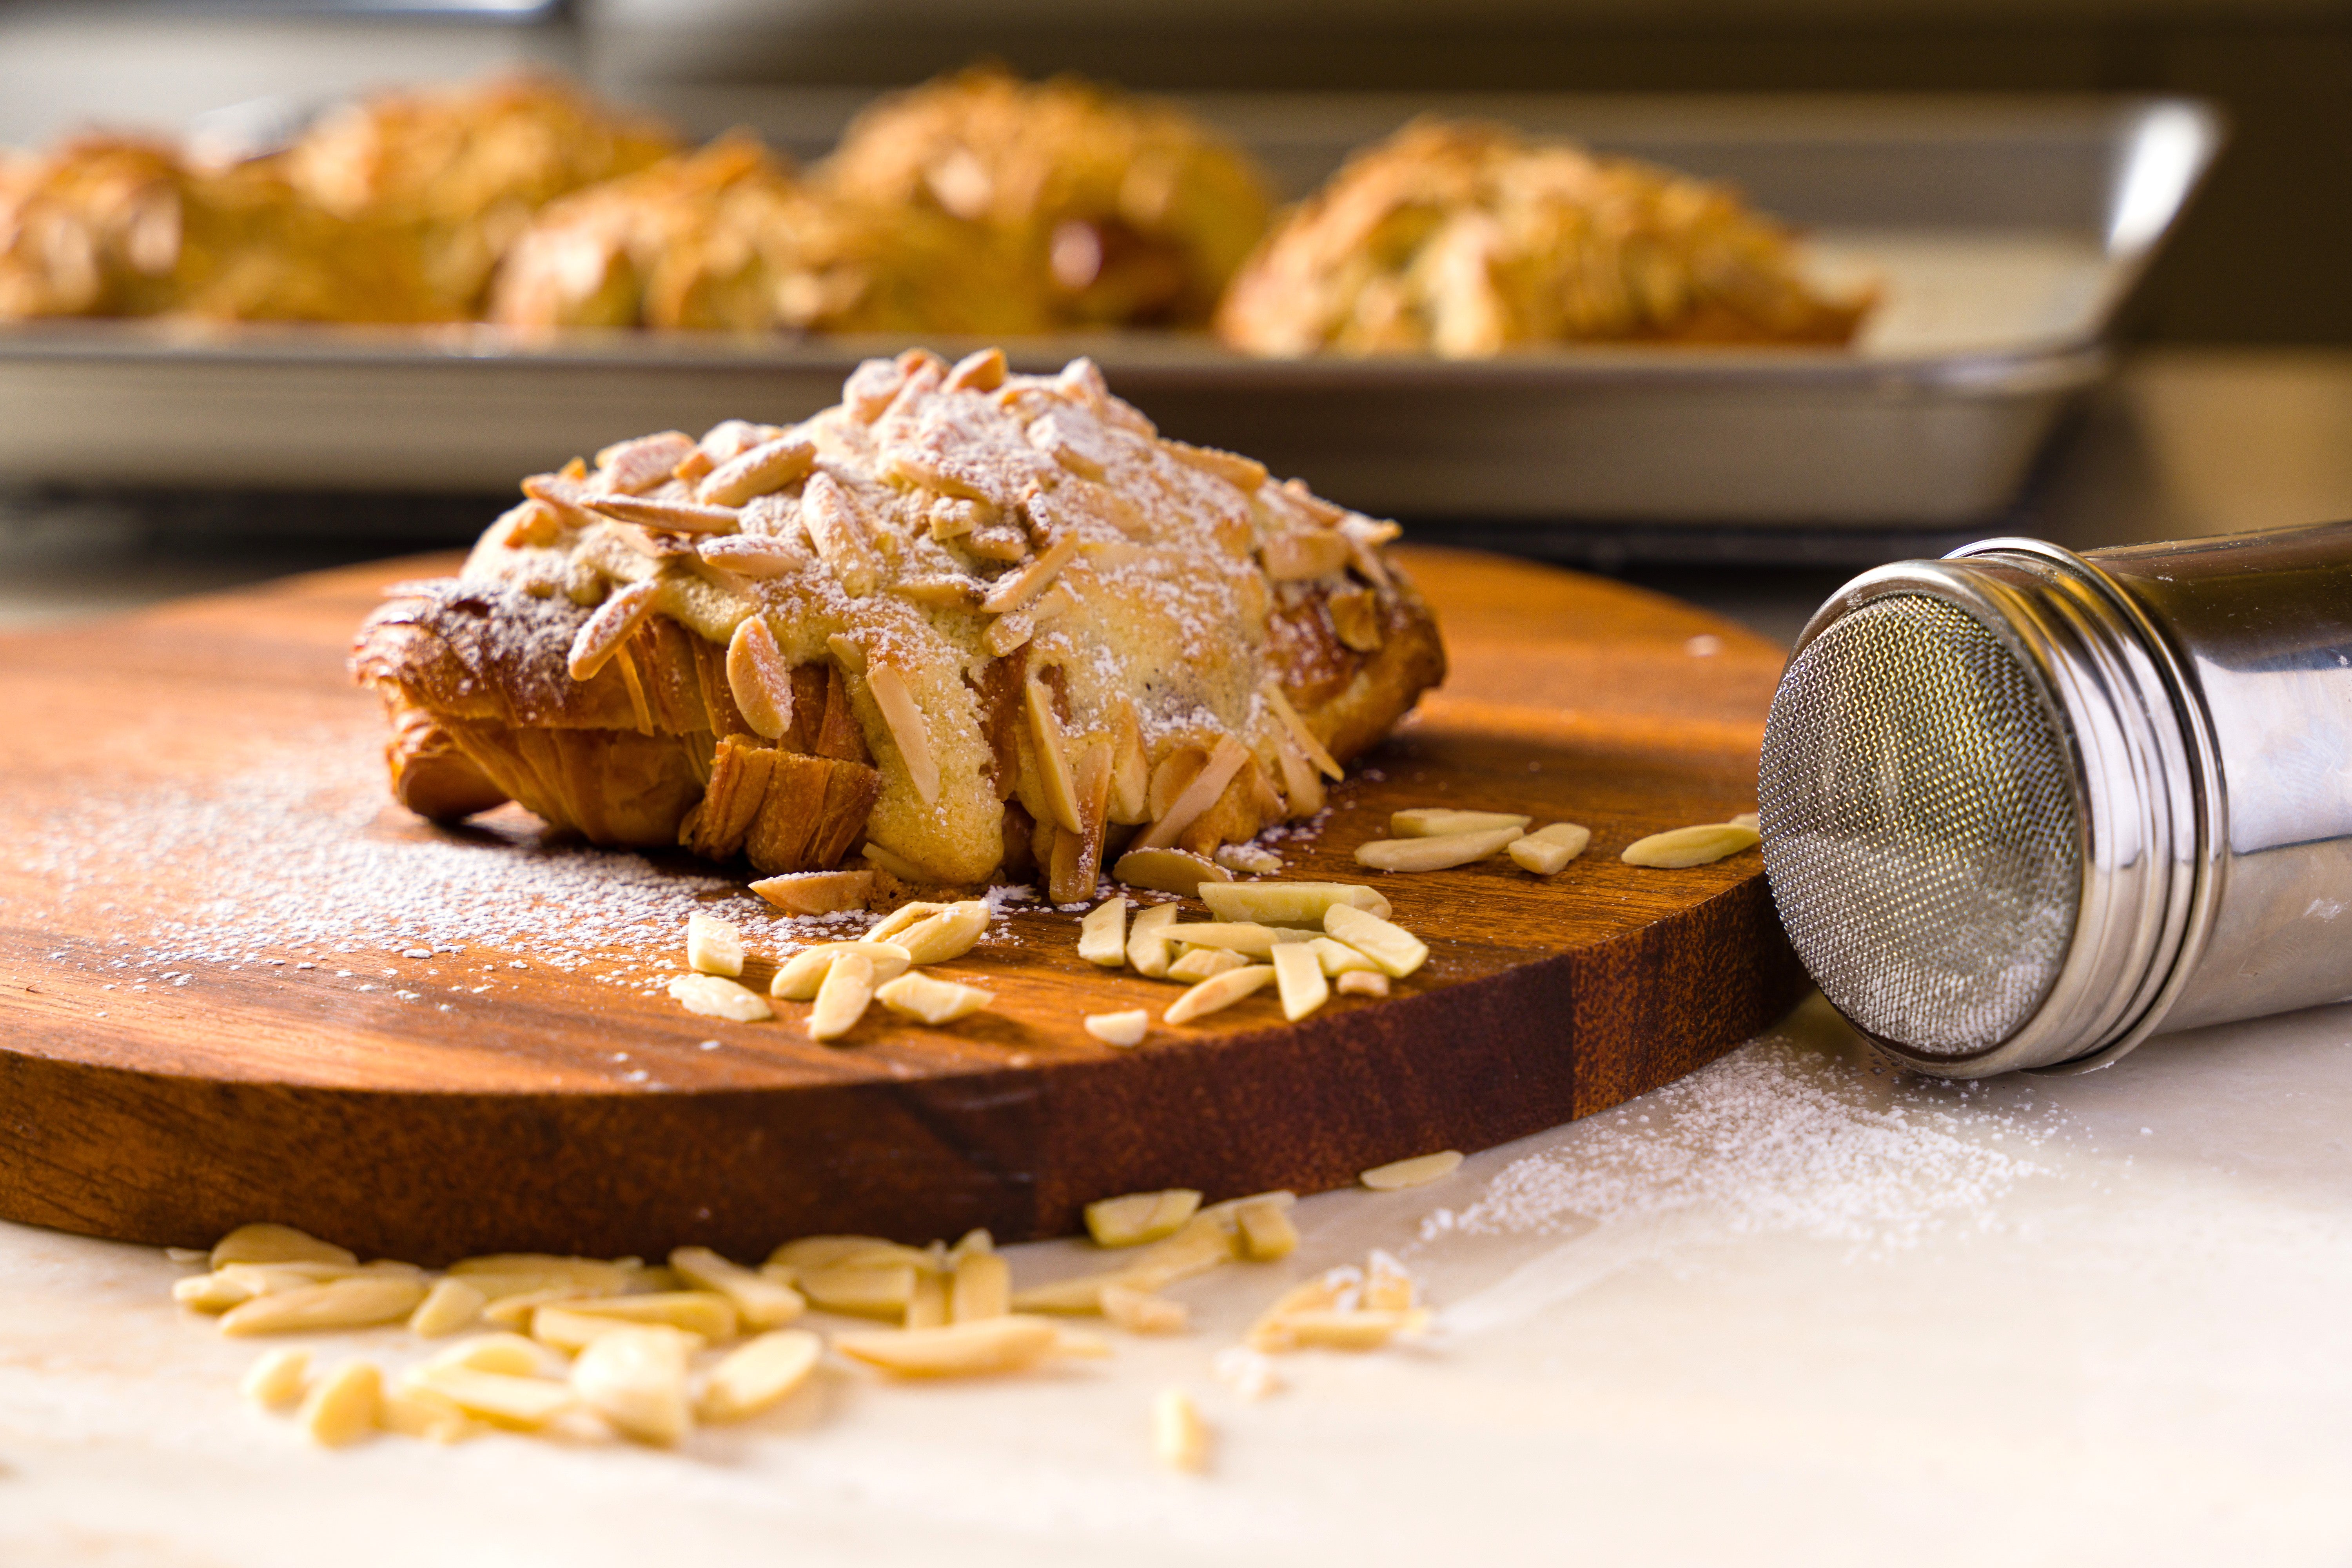 Un croissant aux amandes saupoudré de sucre est posé sur une planche à découper ronde en bois, avec un plateau de croissants en arrière-plan.